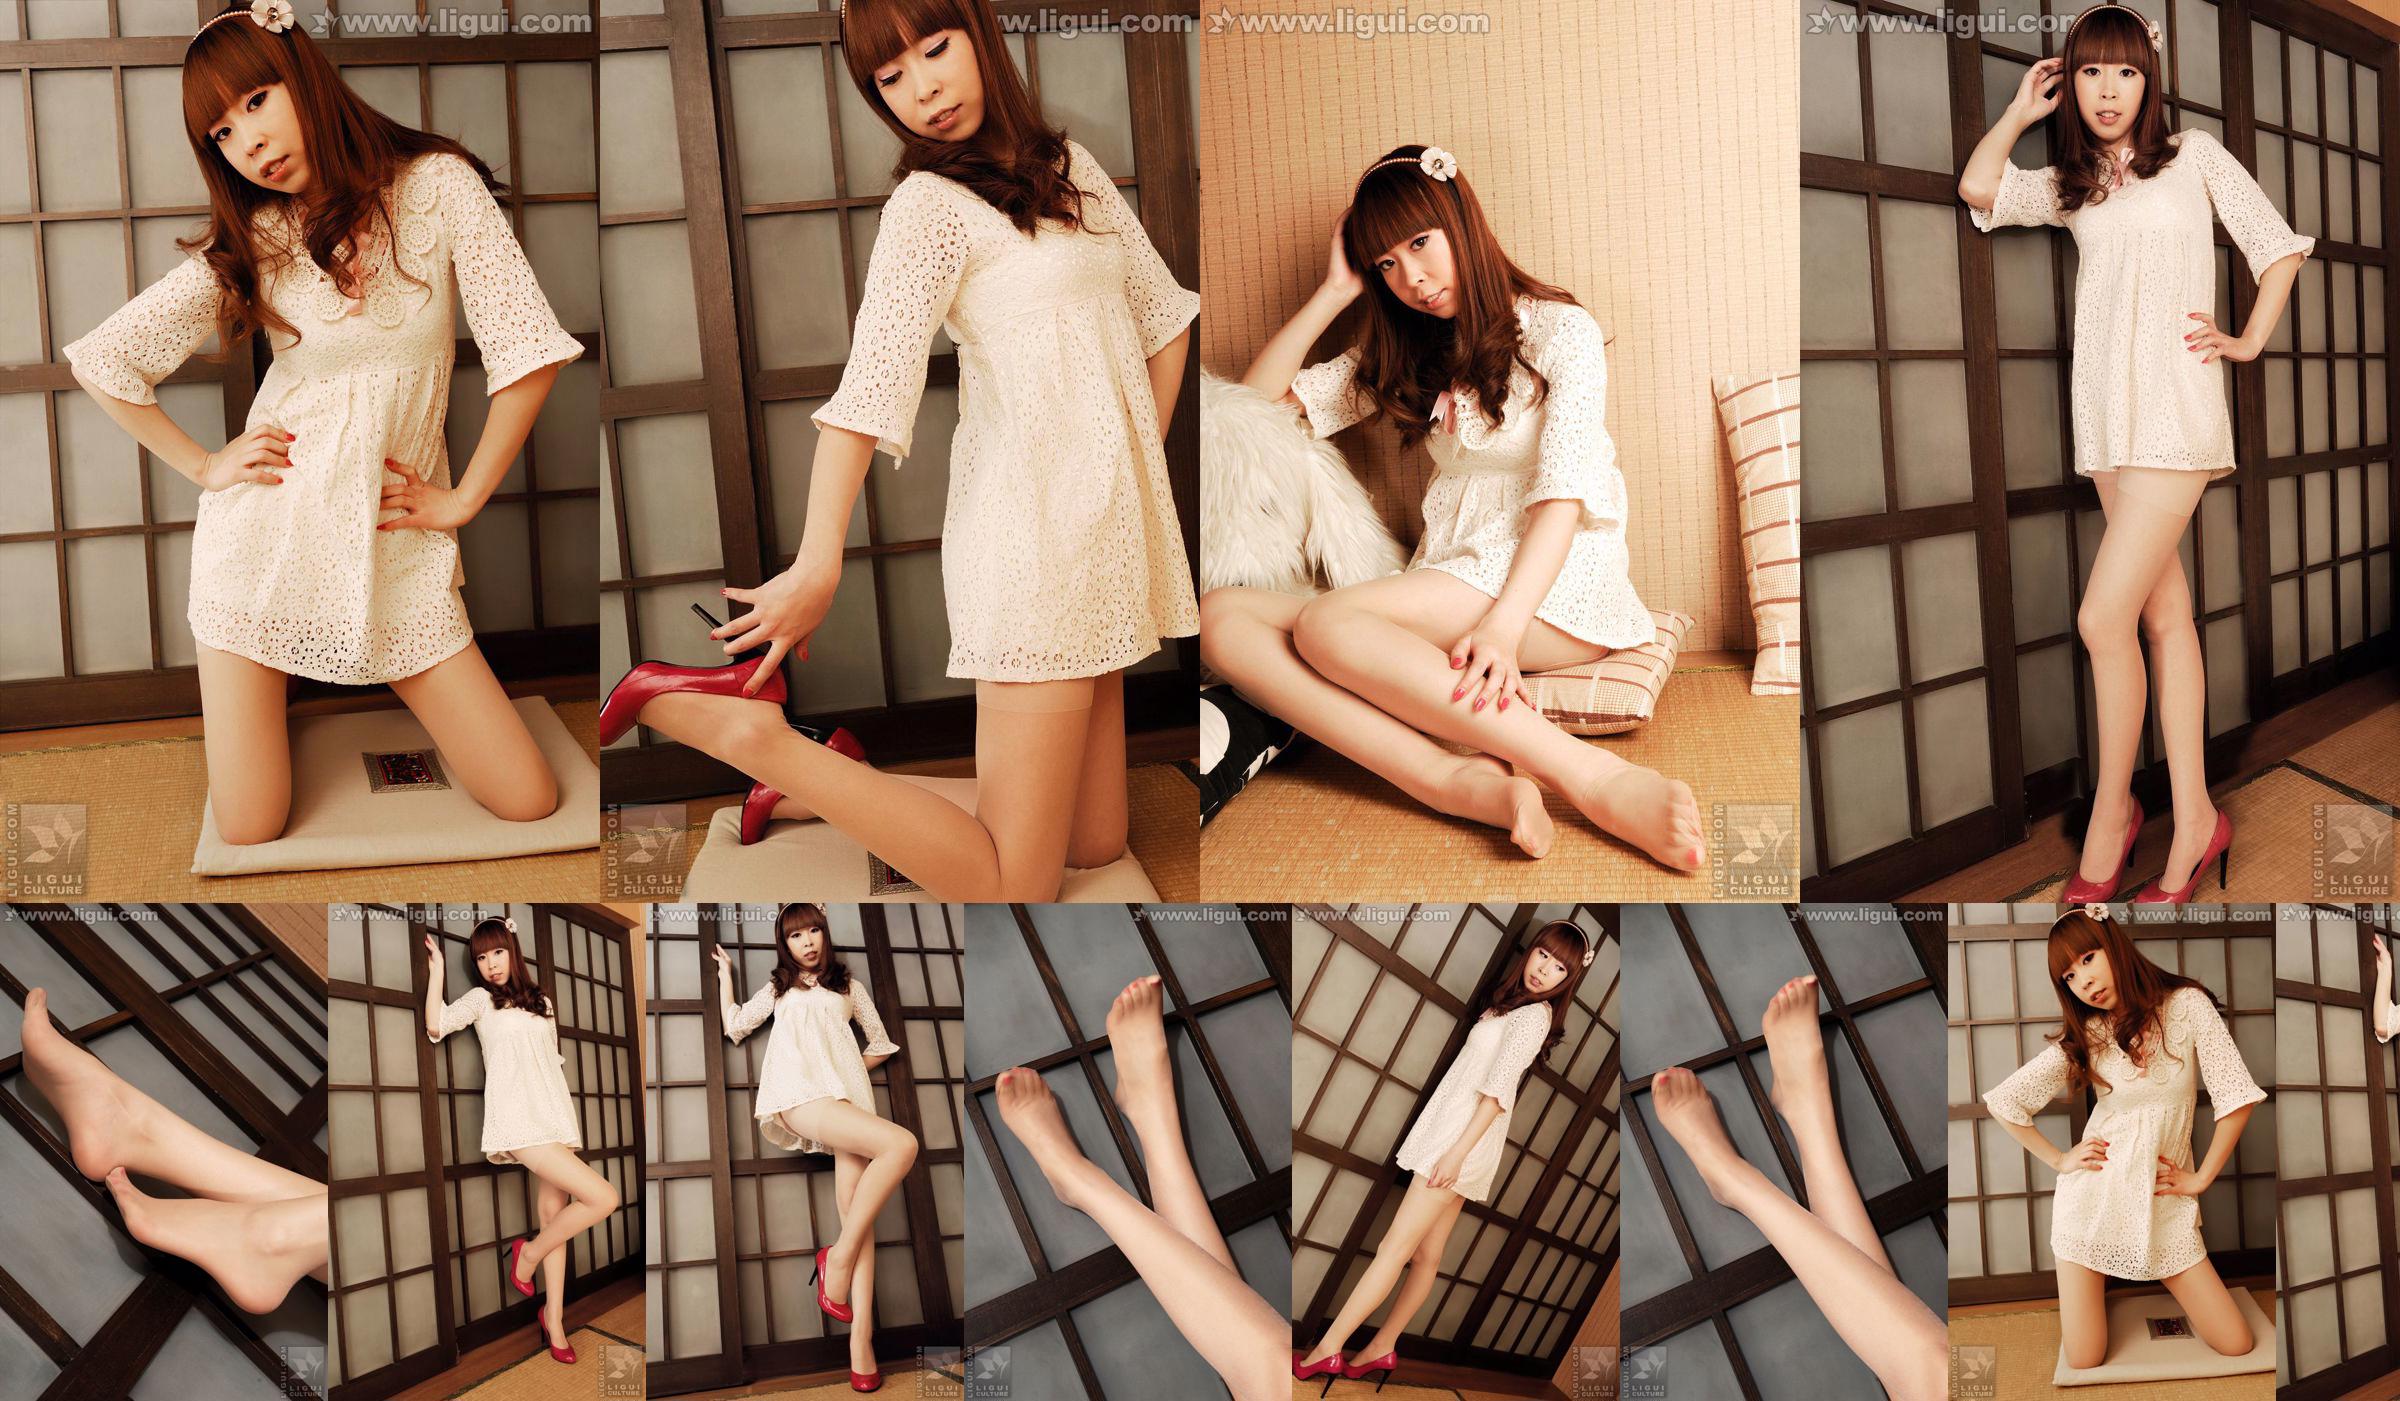 Modell Vikcy "Die Versuchung des japanischen Stils" [丽 柜 LiGui] Schöne Beine und Jadefuß Foto Bild No.e56227 Seite 3